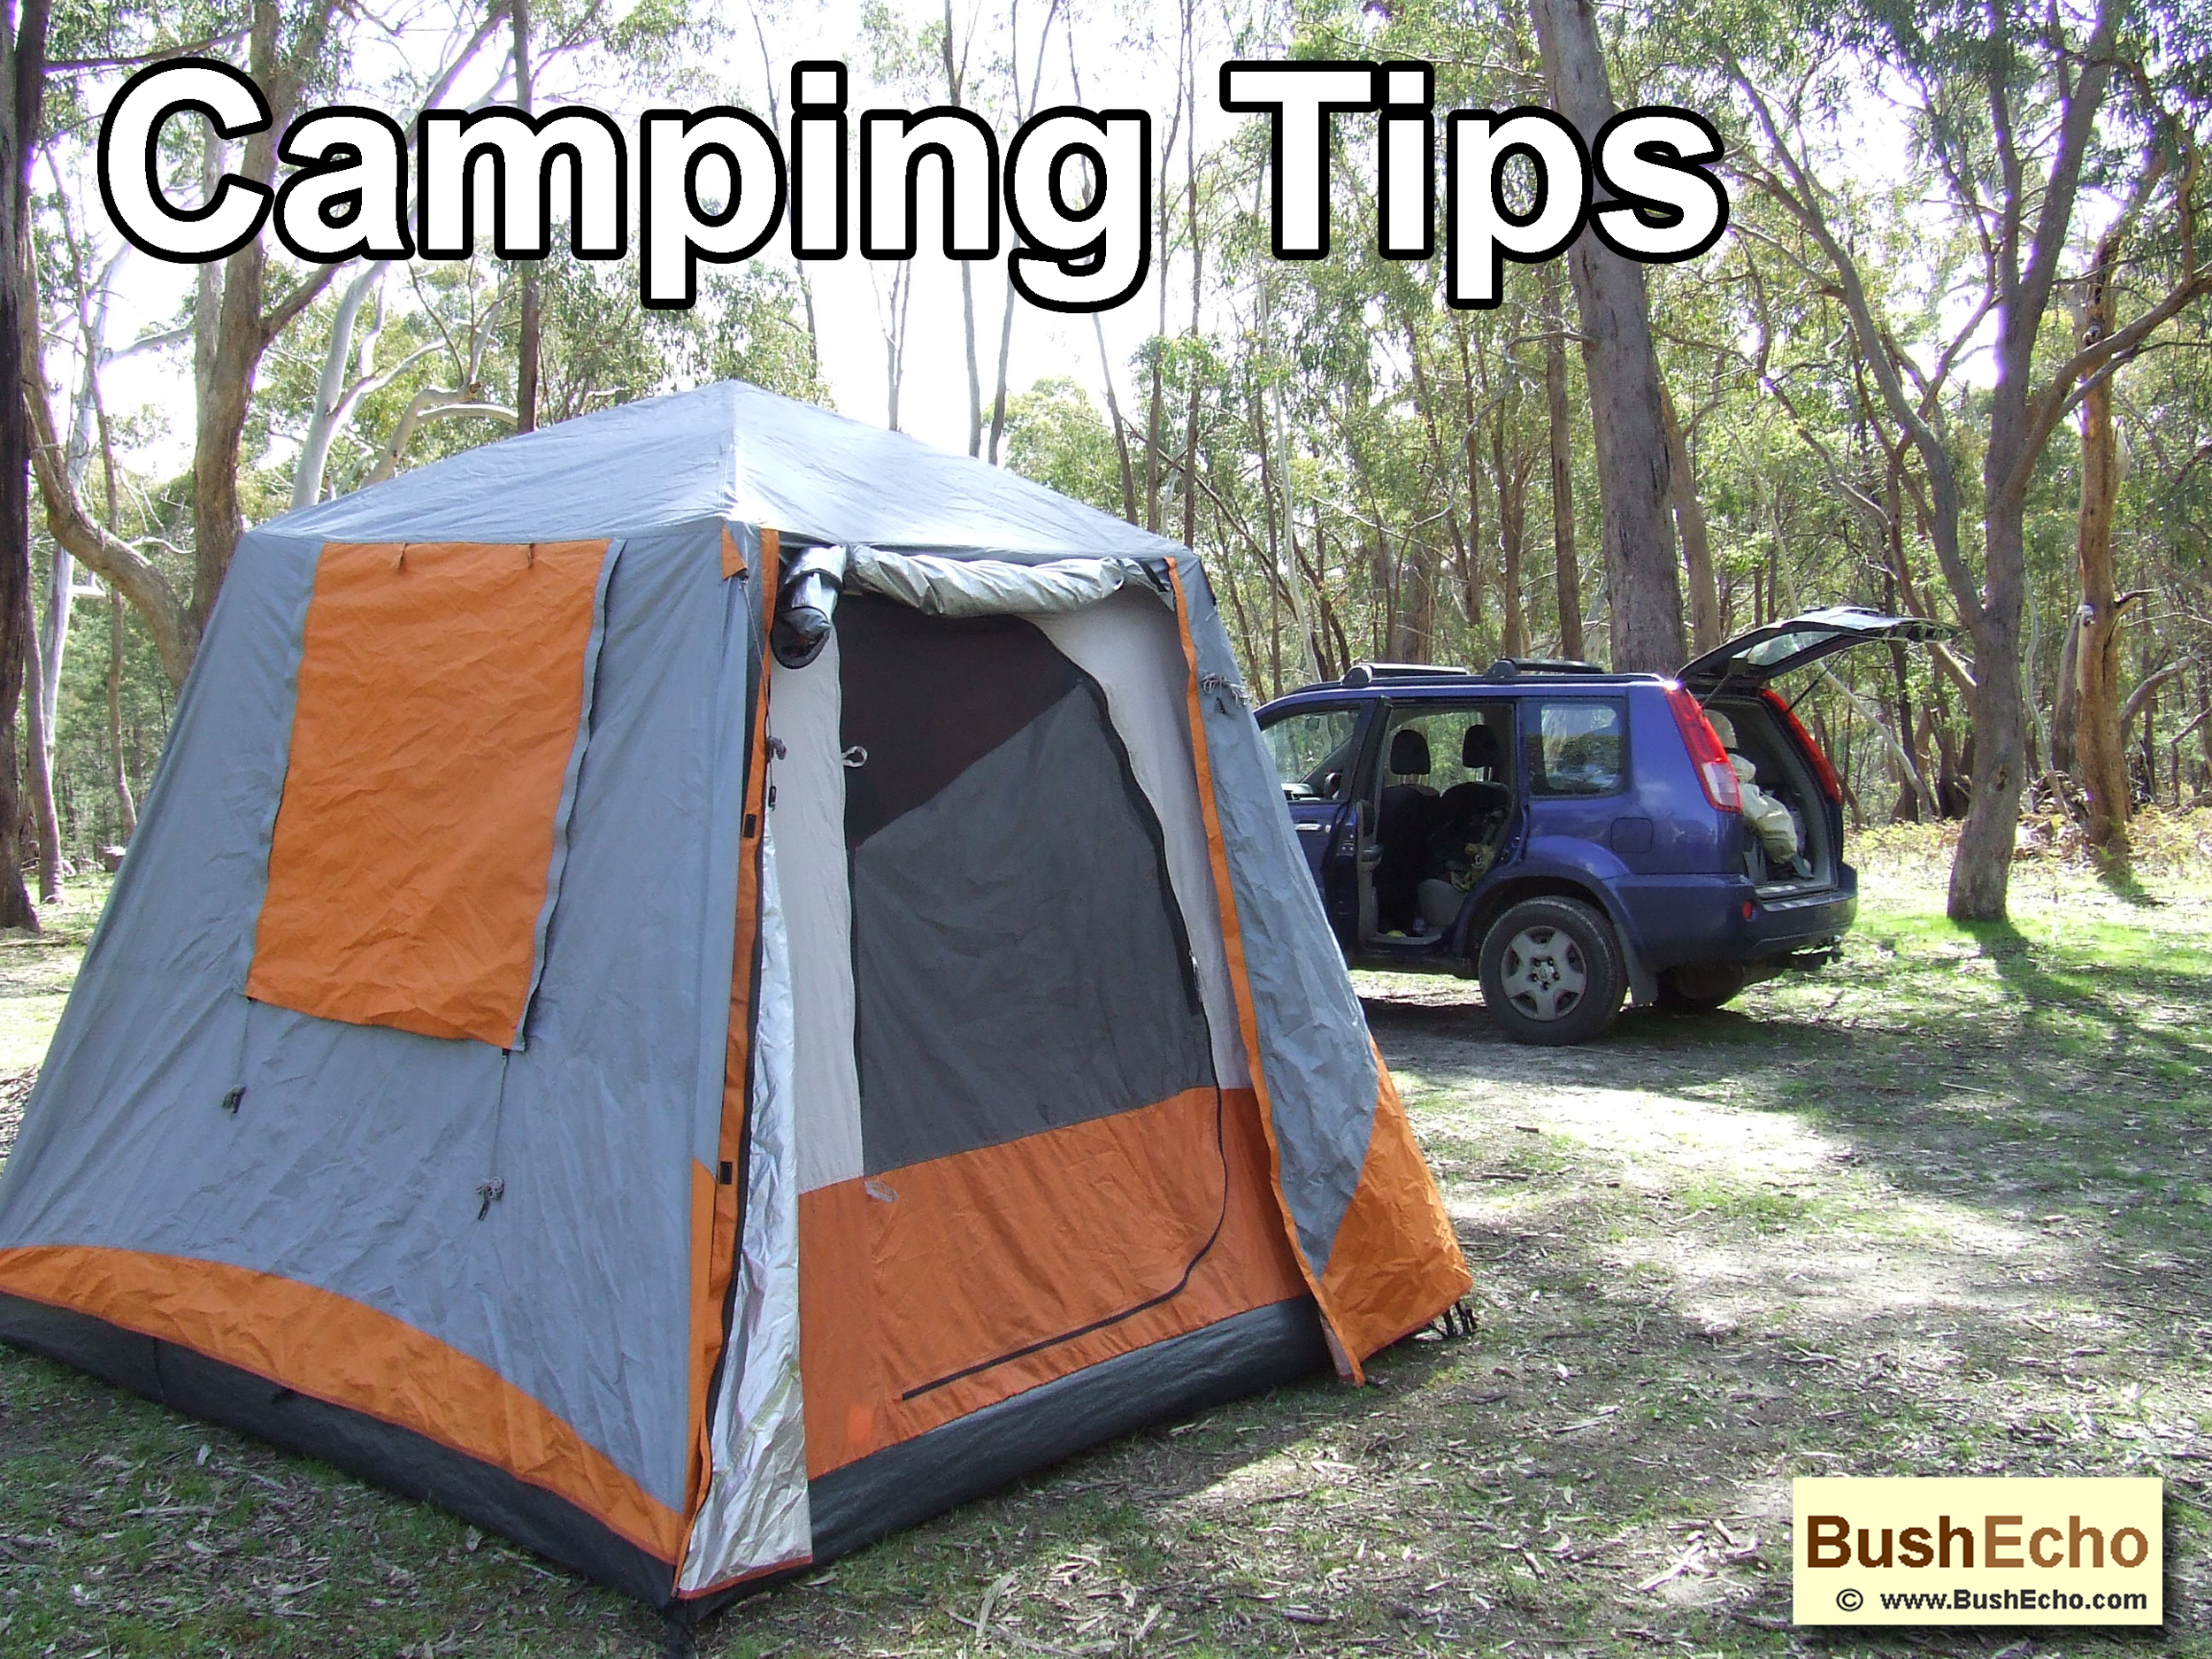 Camping tips